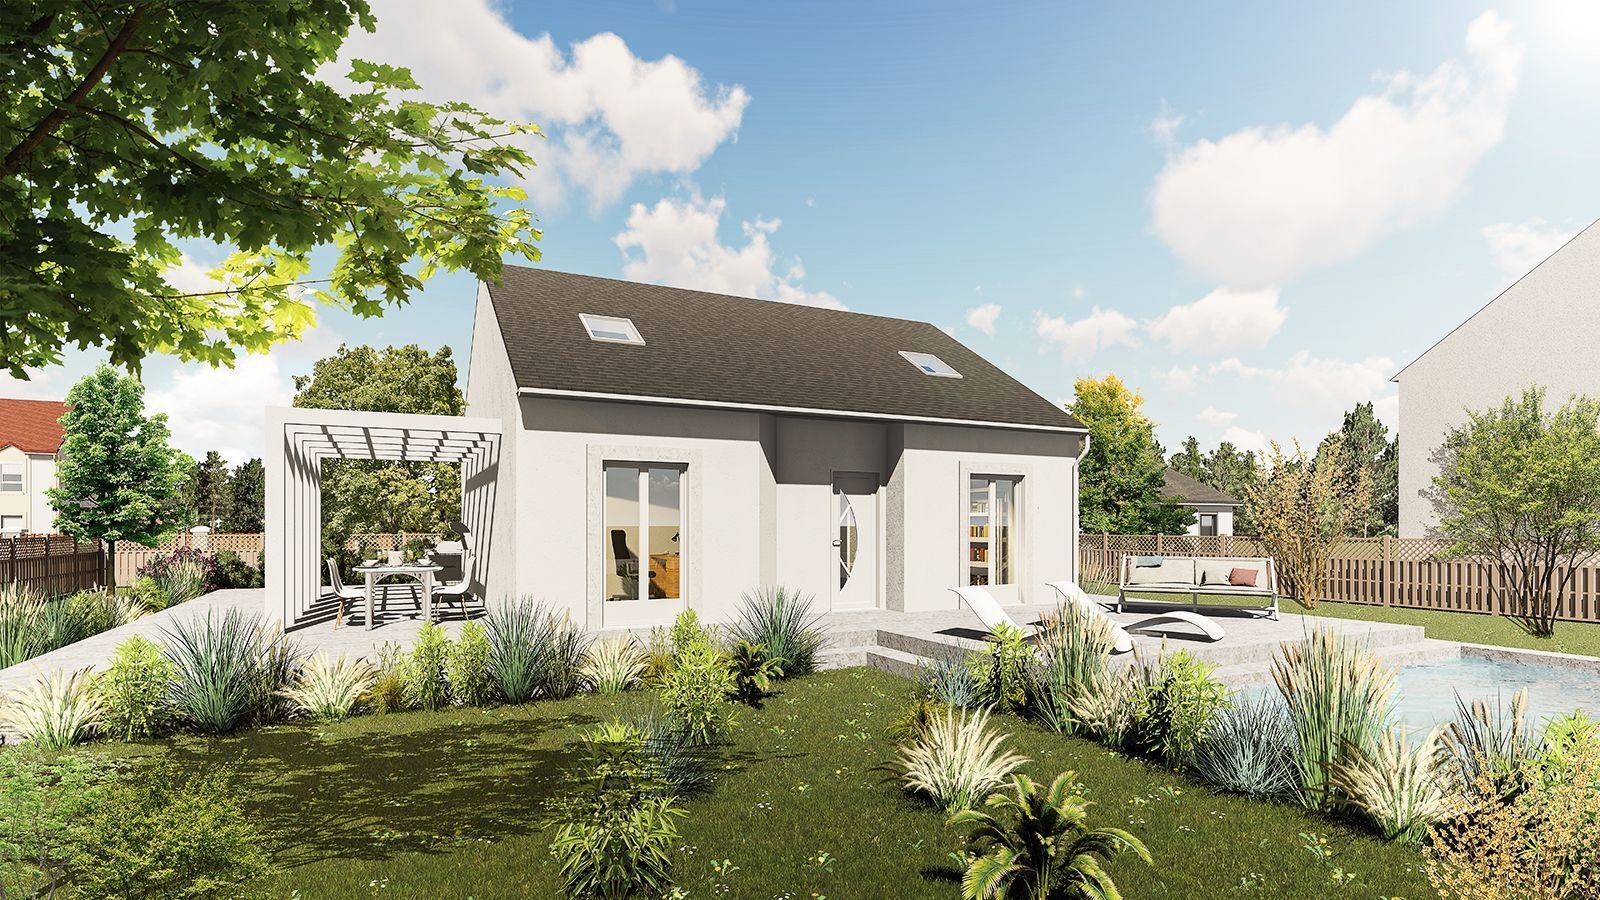 Vente Maison neuve 100 m² à La Croix-en-Brie 244 528 €